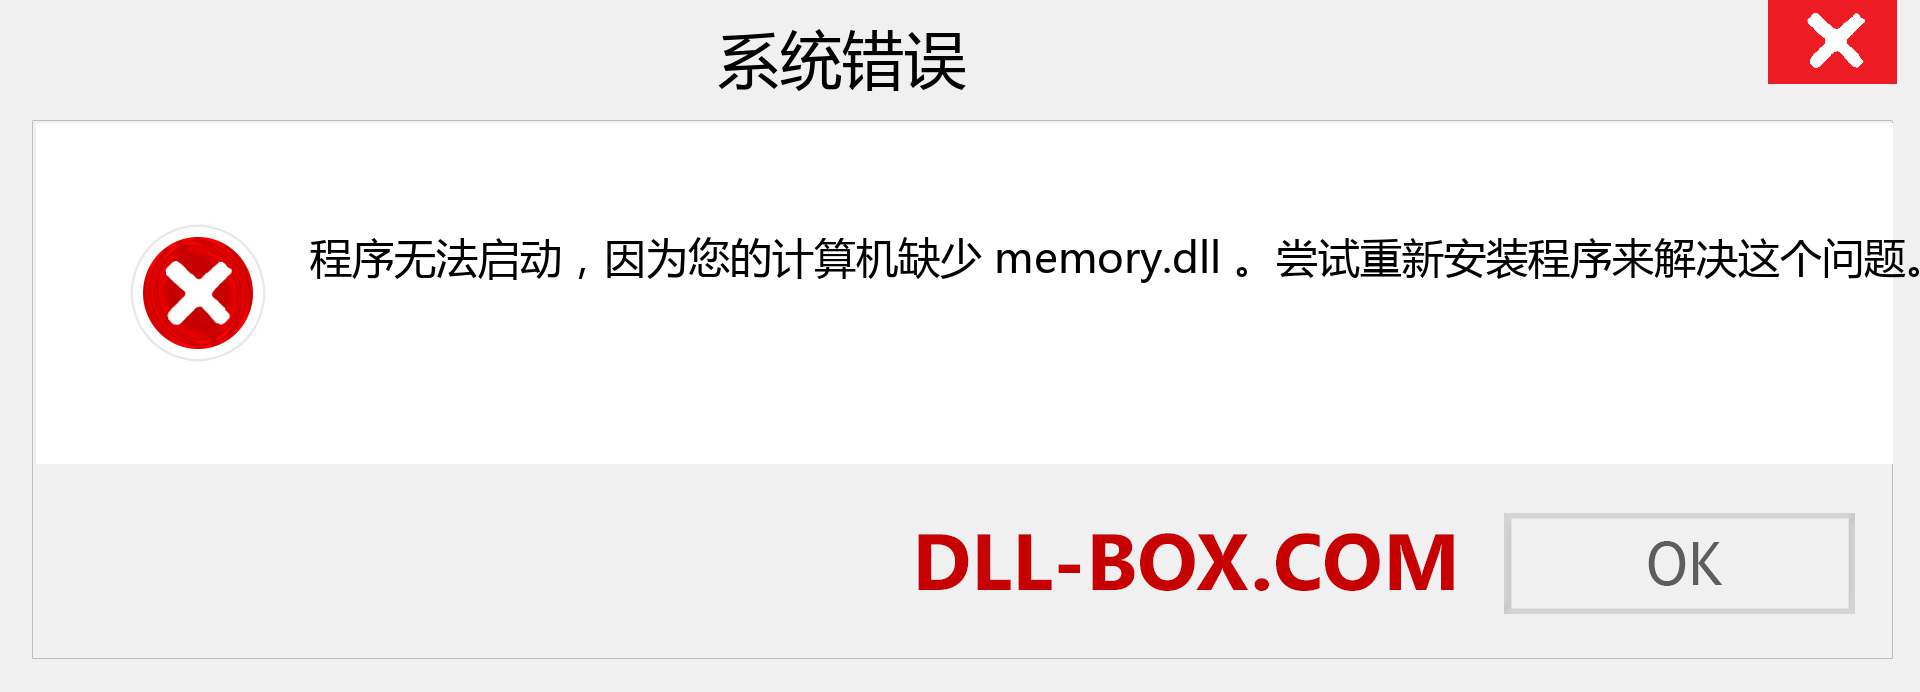 memory.dll 文件丢失？。 适用于 Windows 7、8、10 的下载 - 修复 Windows、照片、图像上的 memory dll 丢失错误